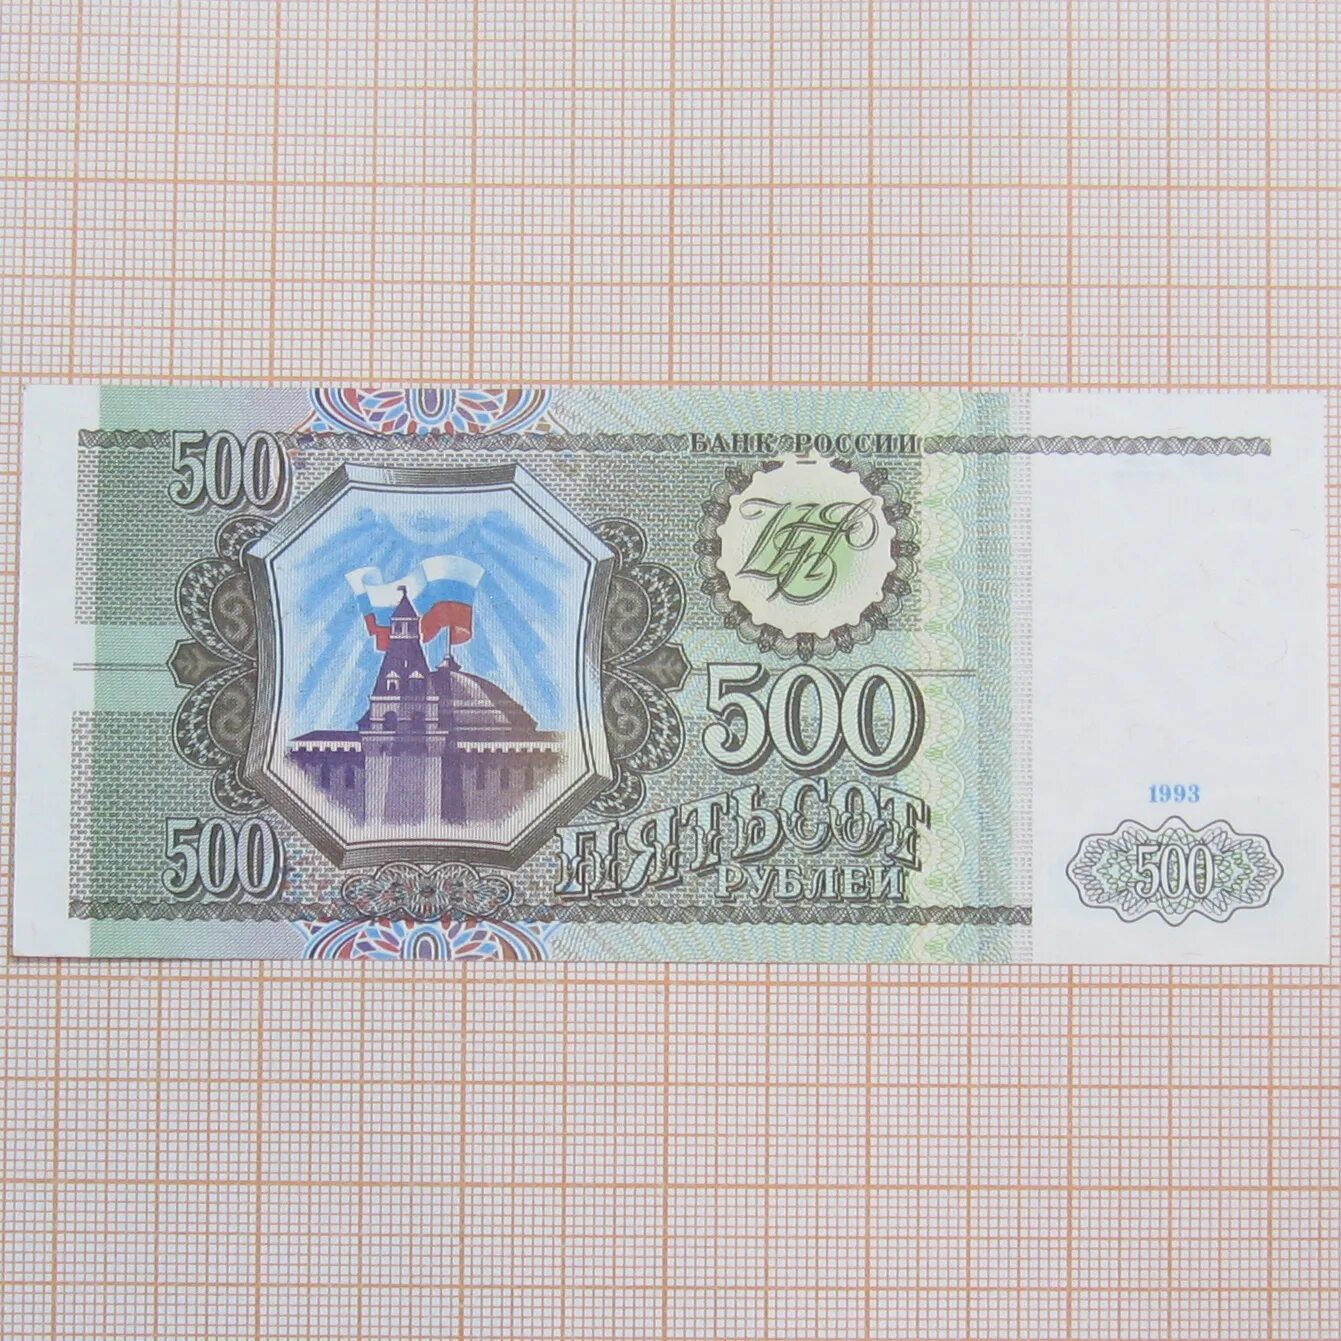 500 Рублей 1993. Рубли 1993. 500 Рублей 1993 года цена. Сколько стоит 500 руб. 1993 г.. 500 рублей 18